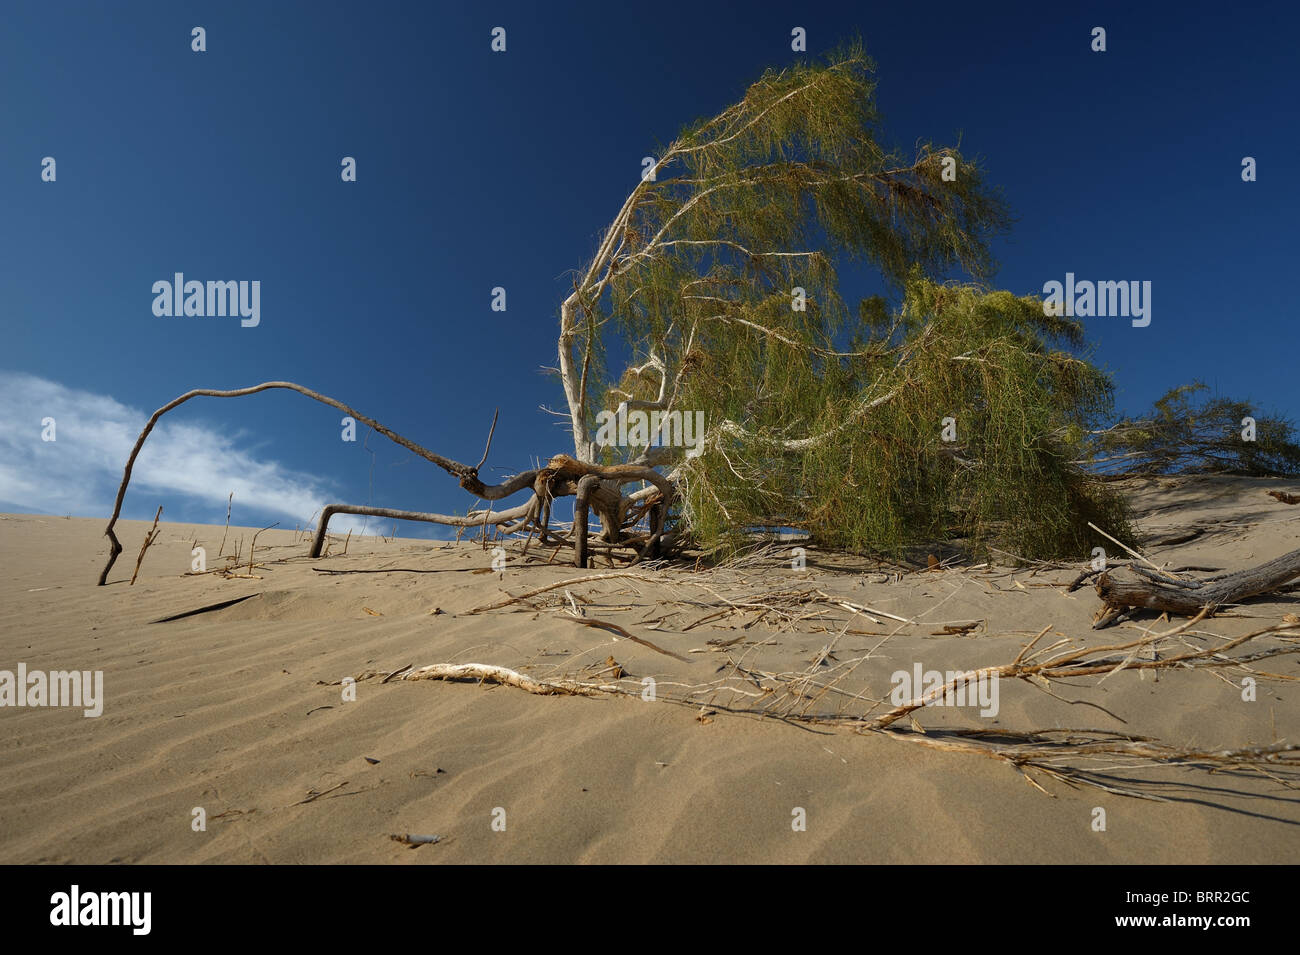 Saxaul arbre avec les racines longues ouvertes au Kazakhstan désert de sable. Arbres Saxaul résister contre l'expansion du désert. Banque D'Images